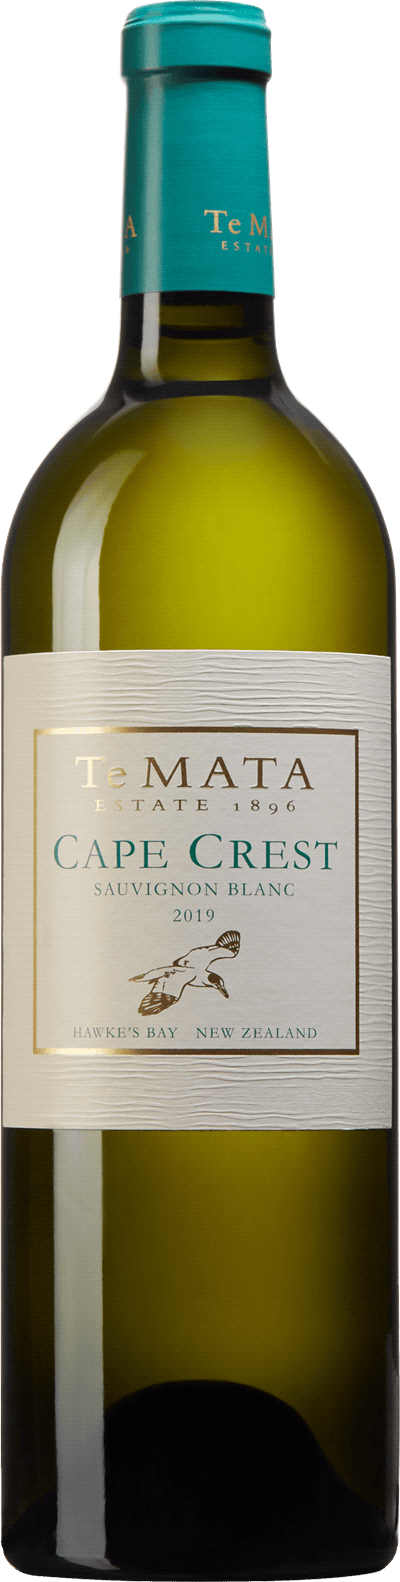 Te Mata Cape Crest Sauvignon Blanc